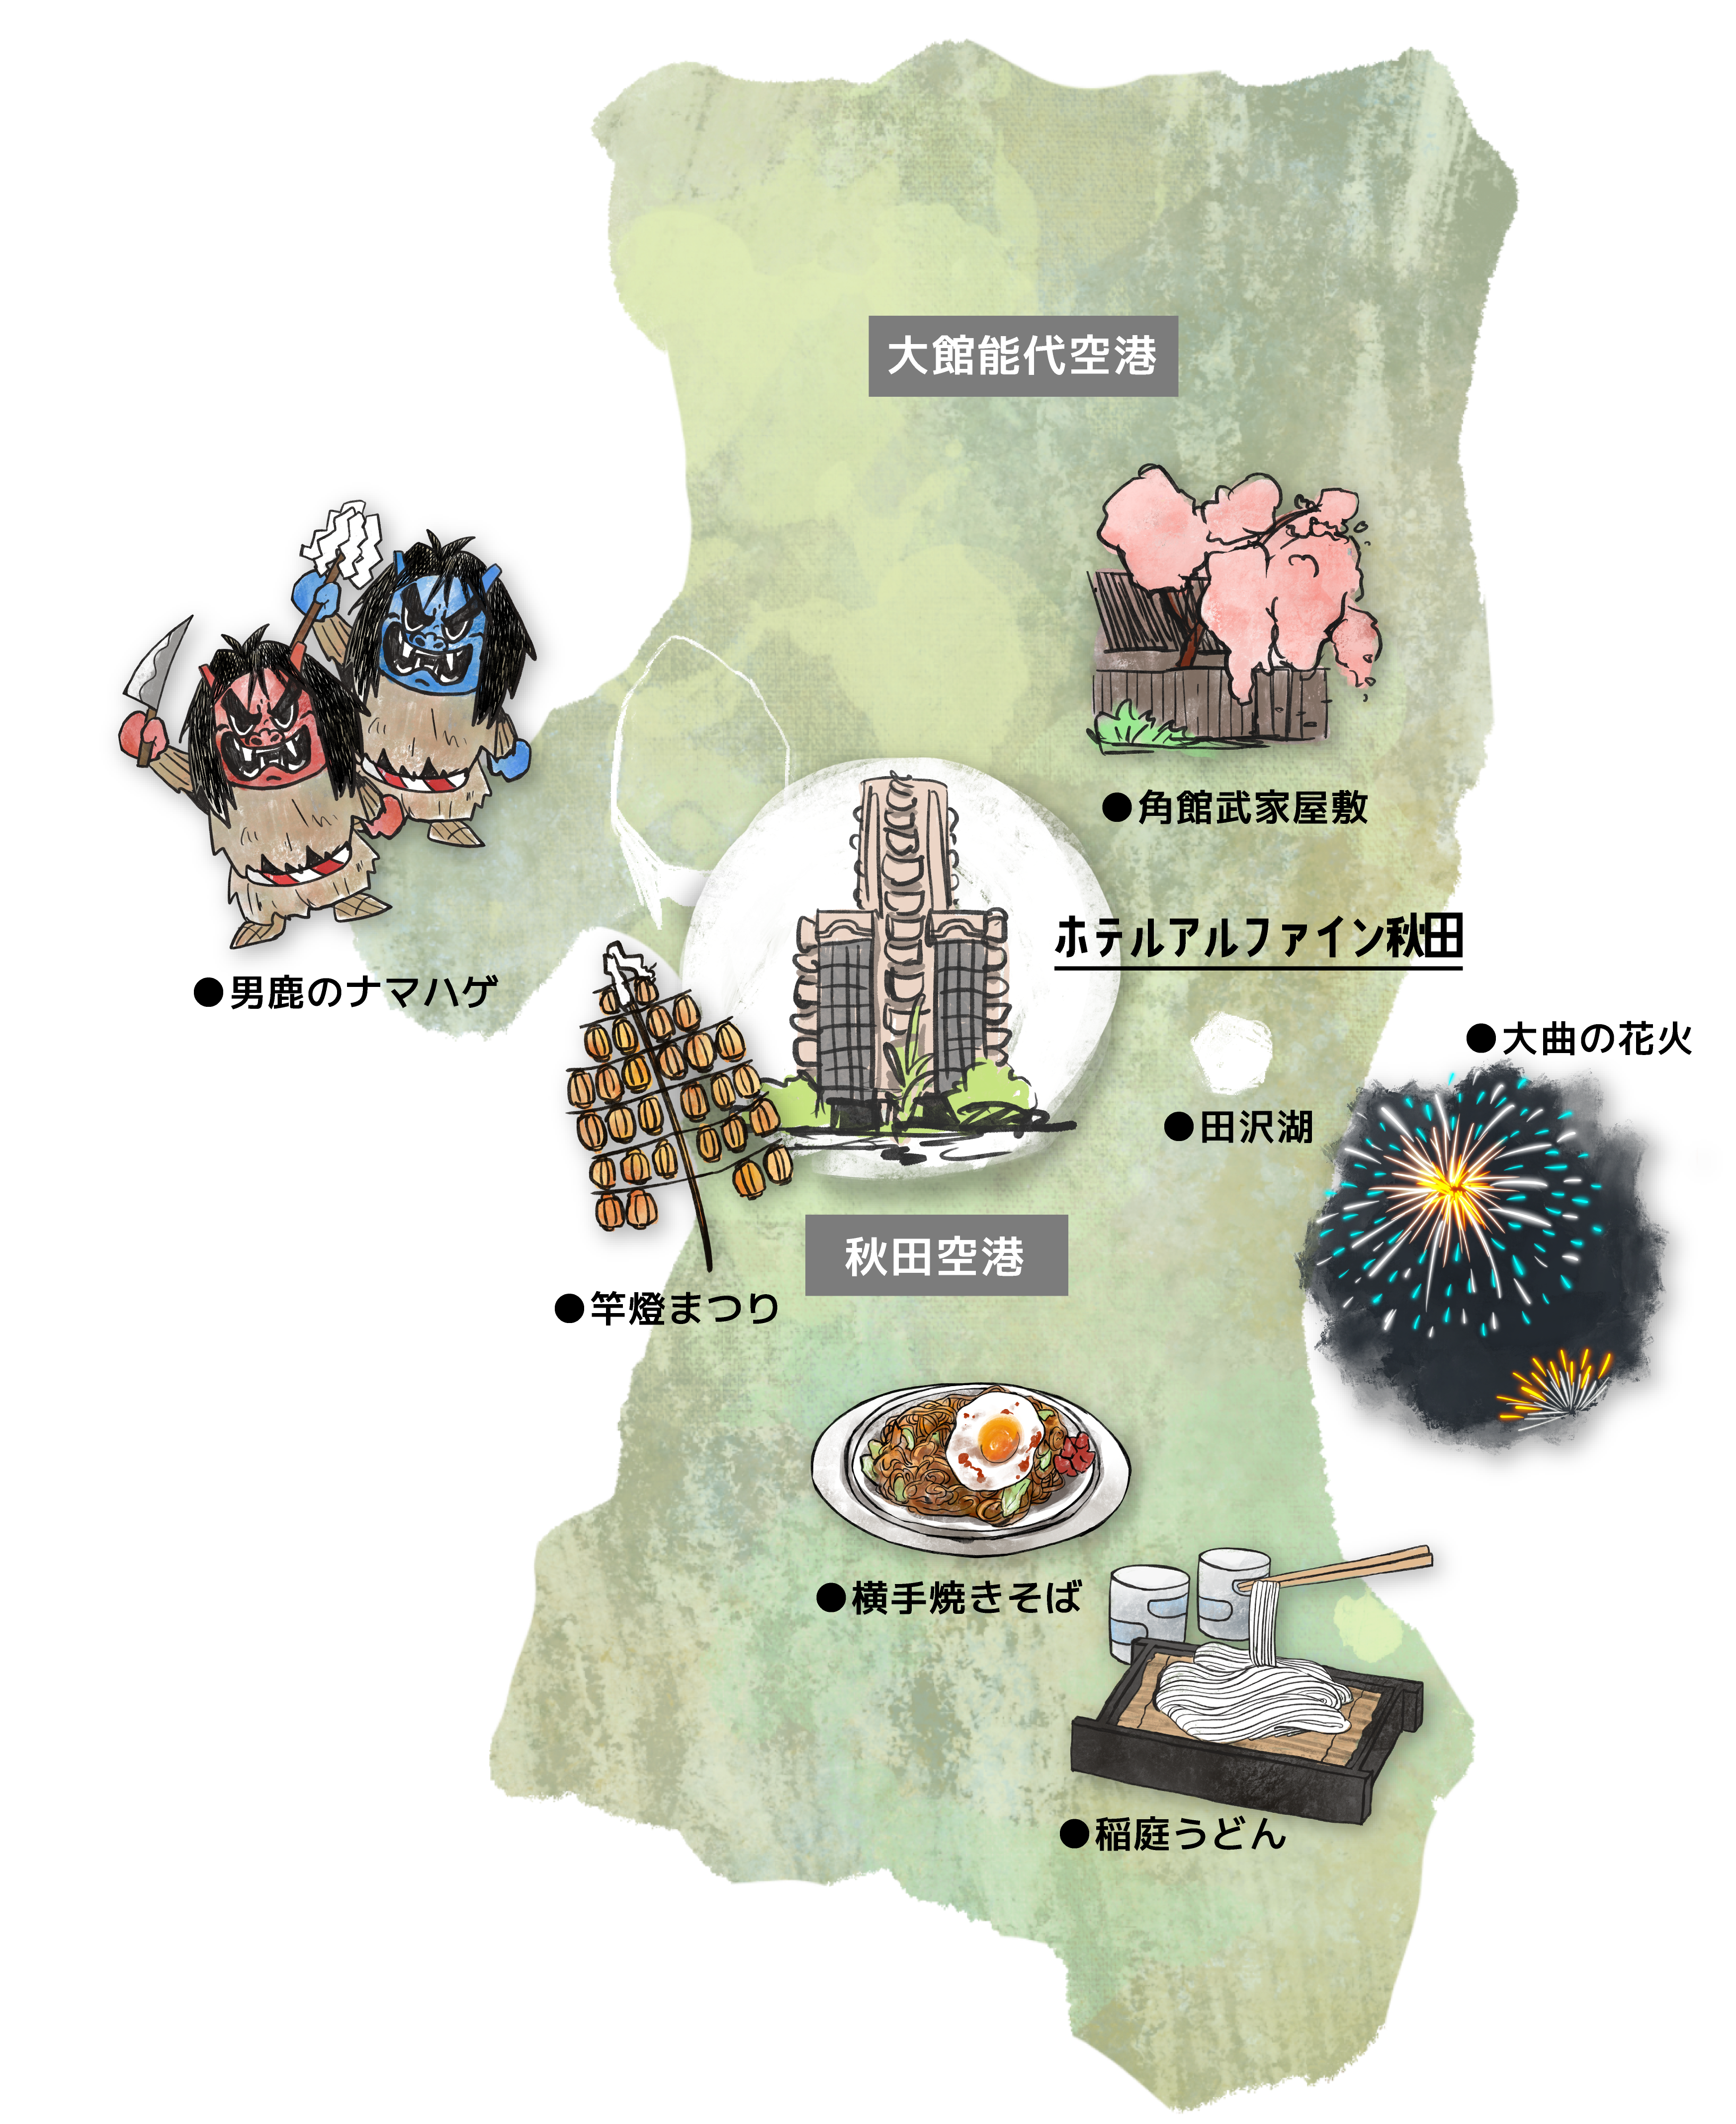 マップ：県内の観光情報